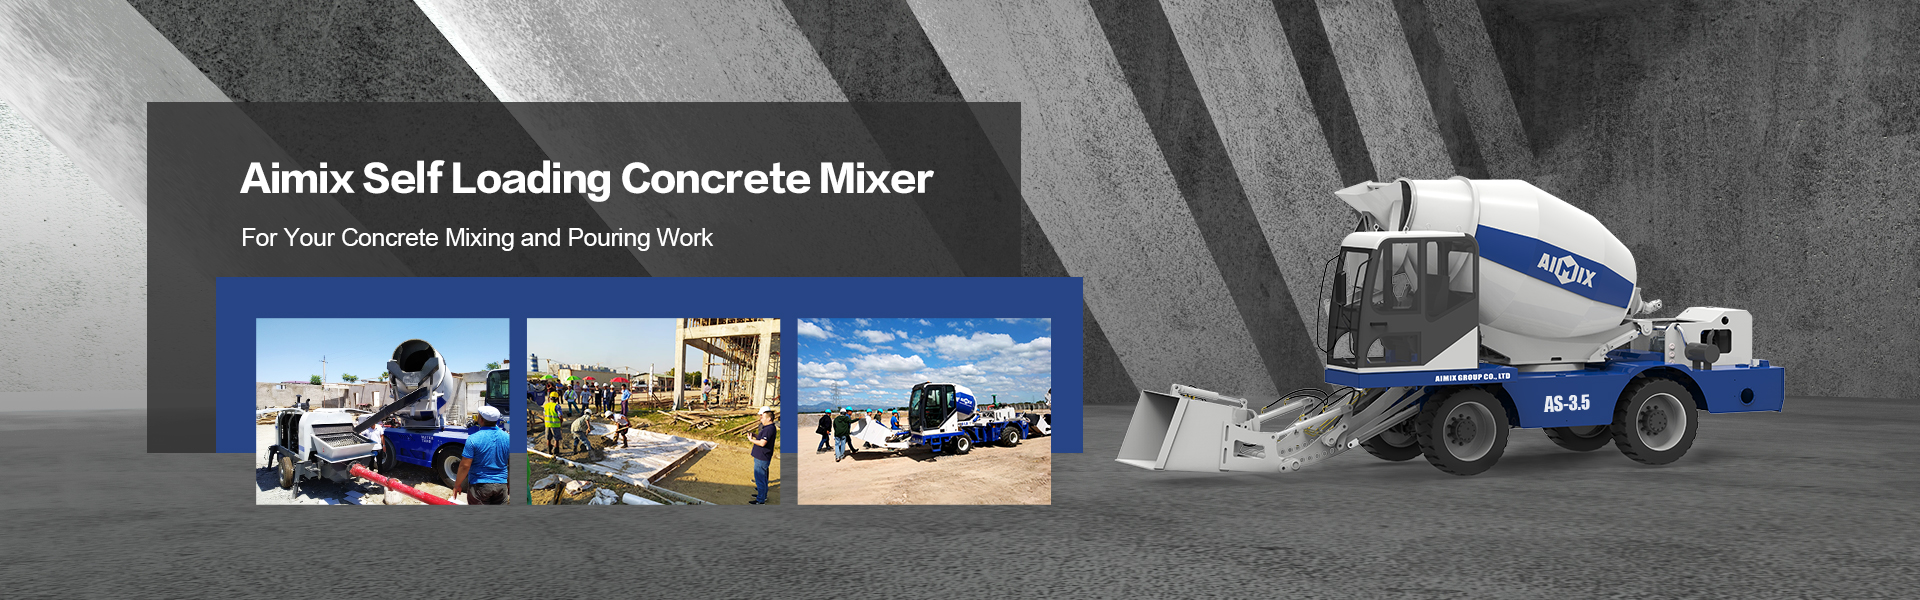 aimix self loading concrete mixer